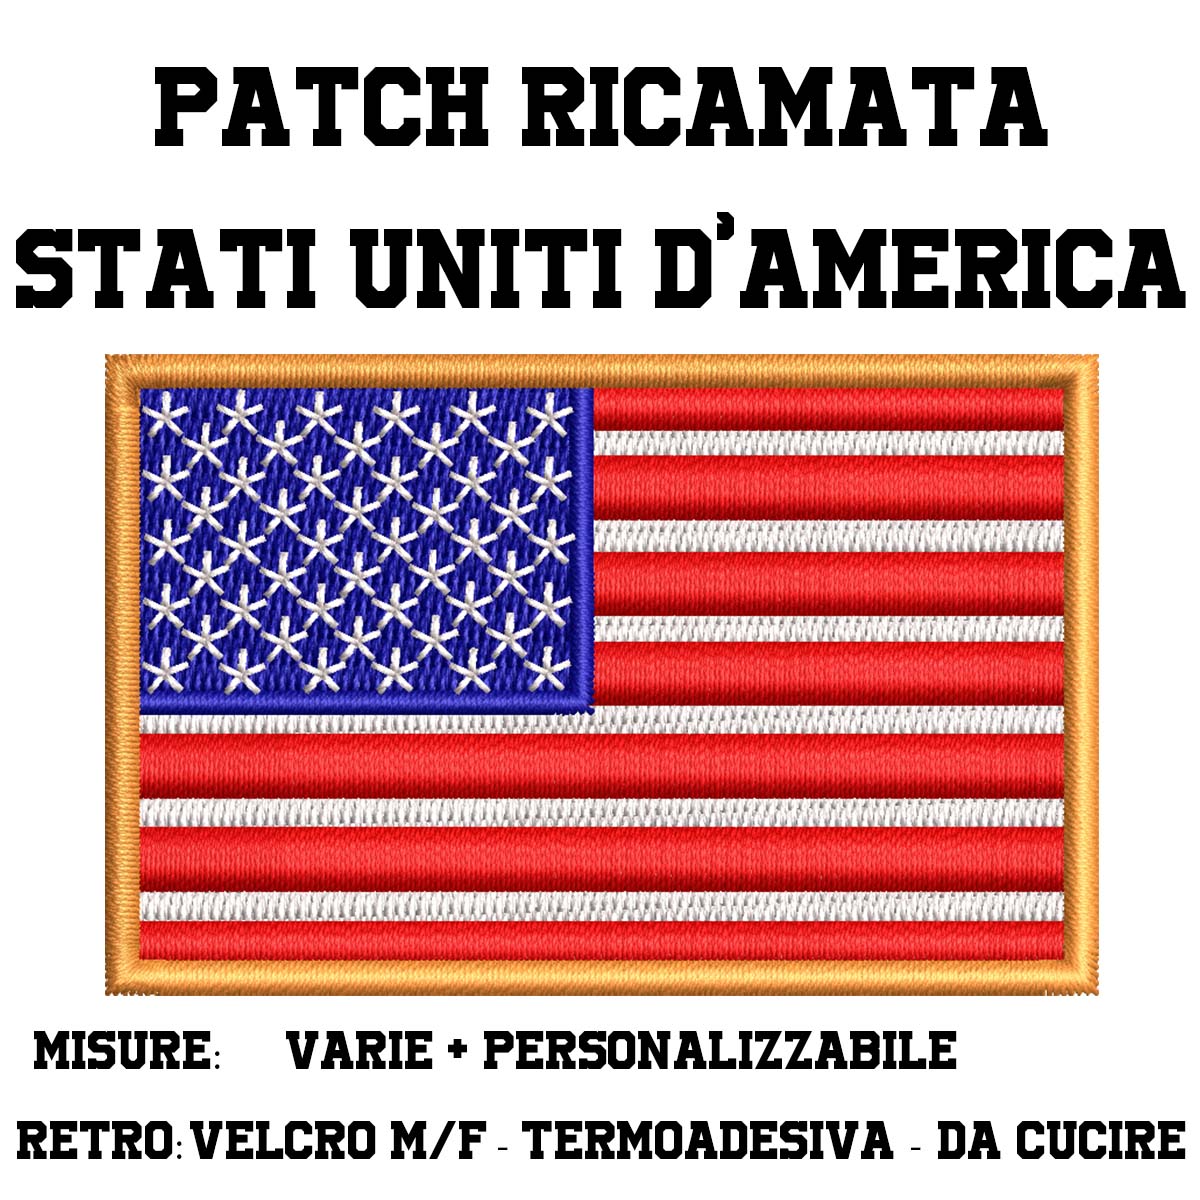 Patch bandiera Stati Uniti d'America USA ricamata